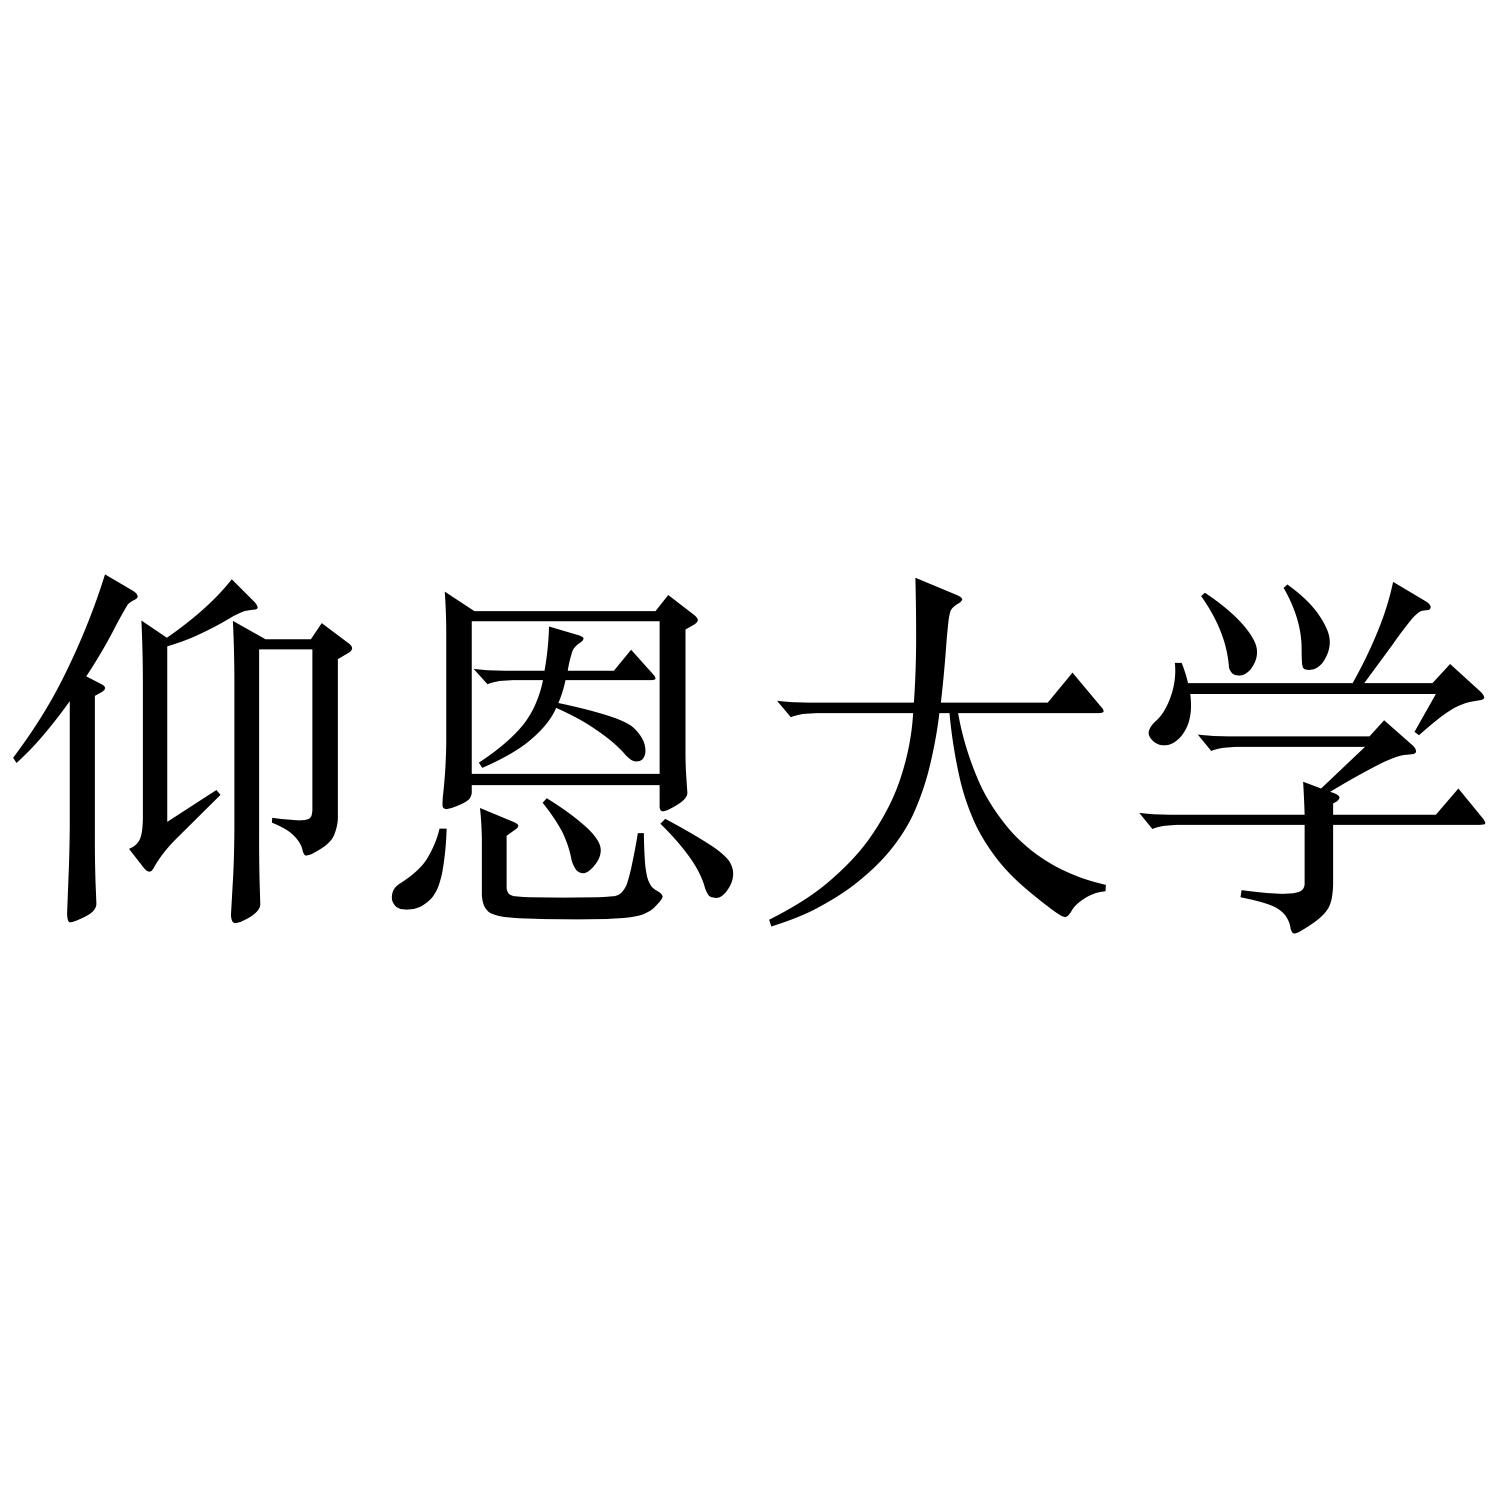 仰恩大学logo图片